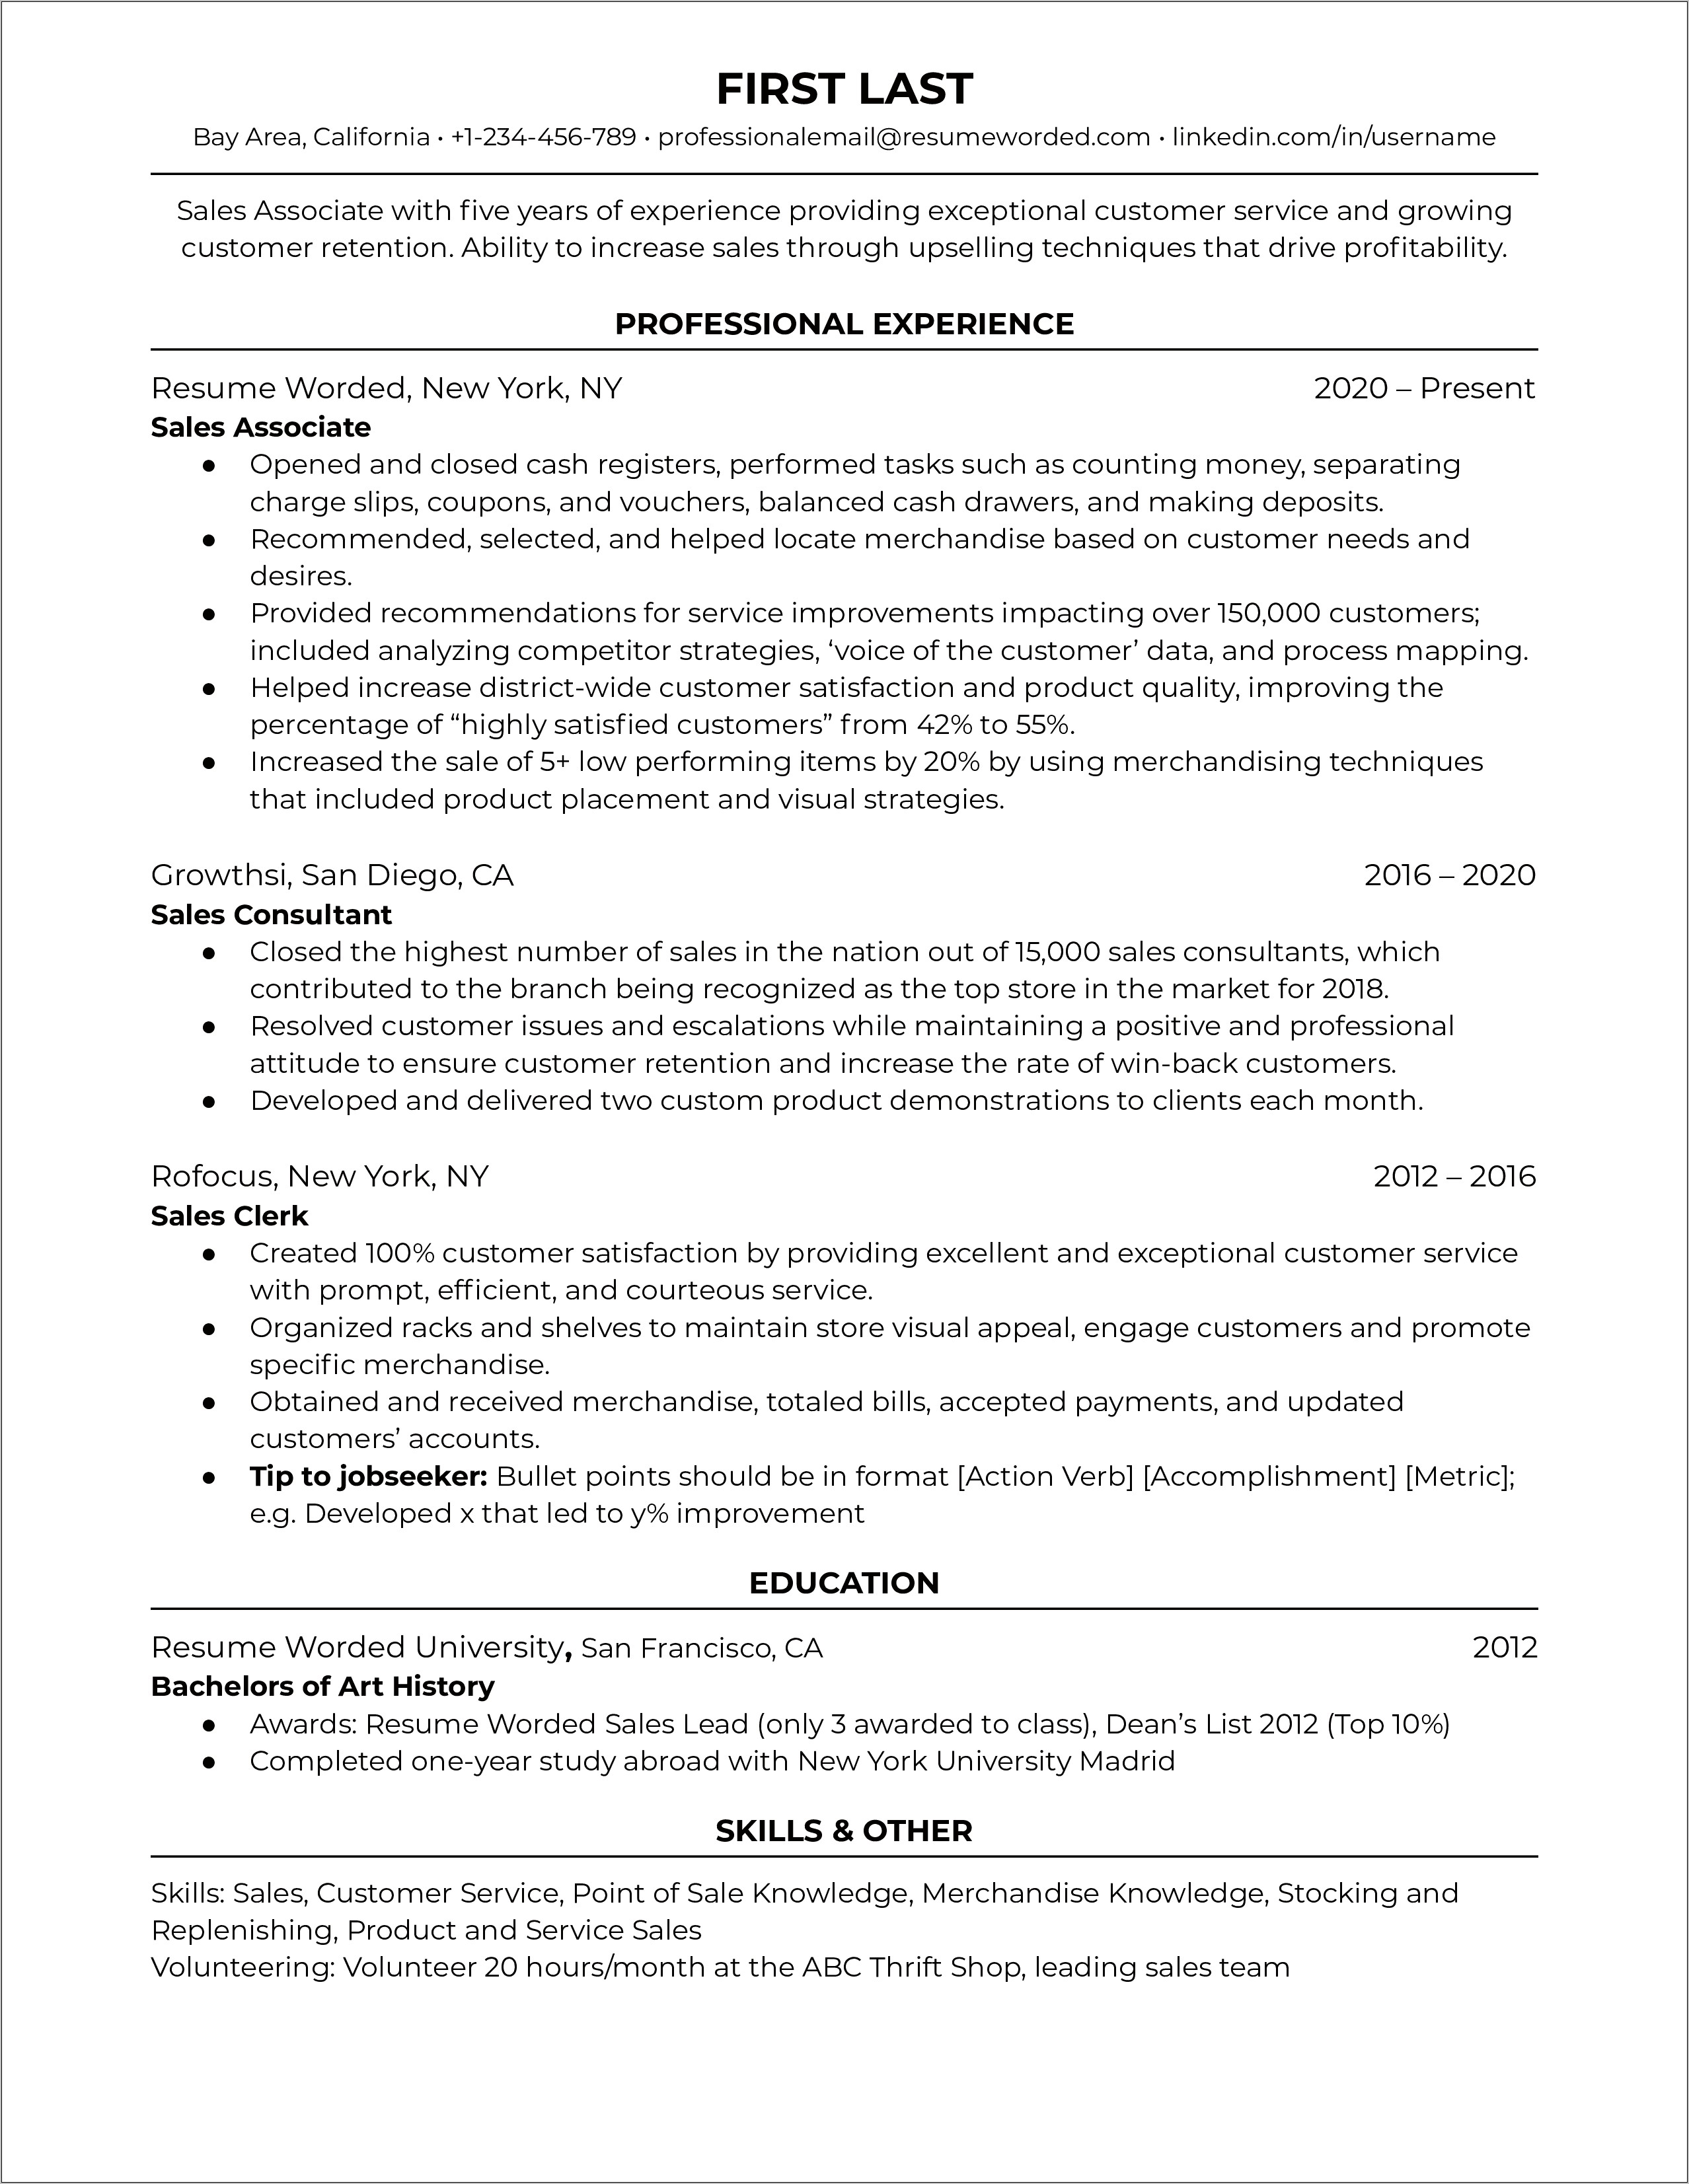 Job Description For Target Sales Associate On Resume